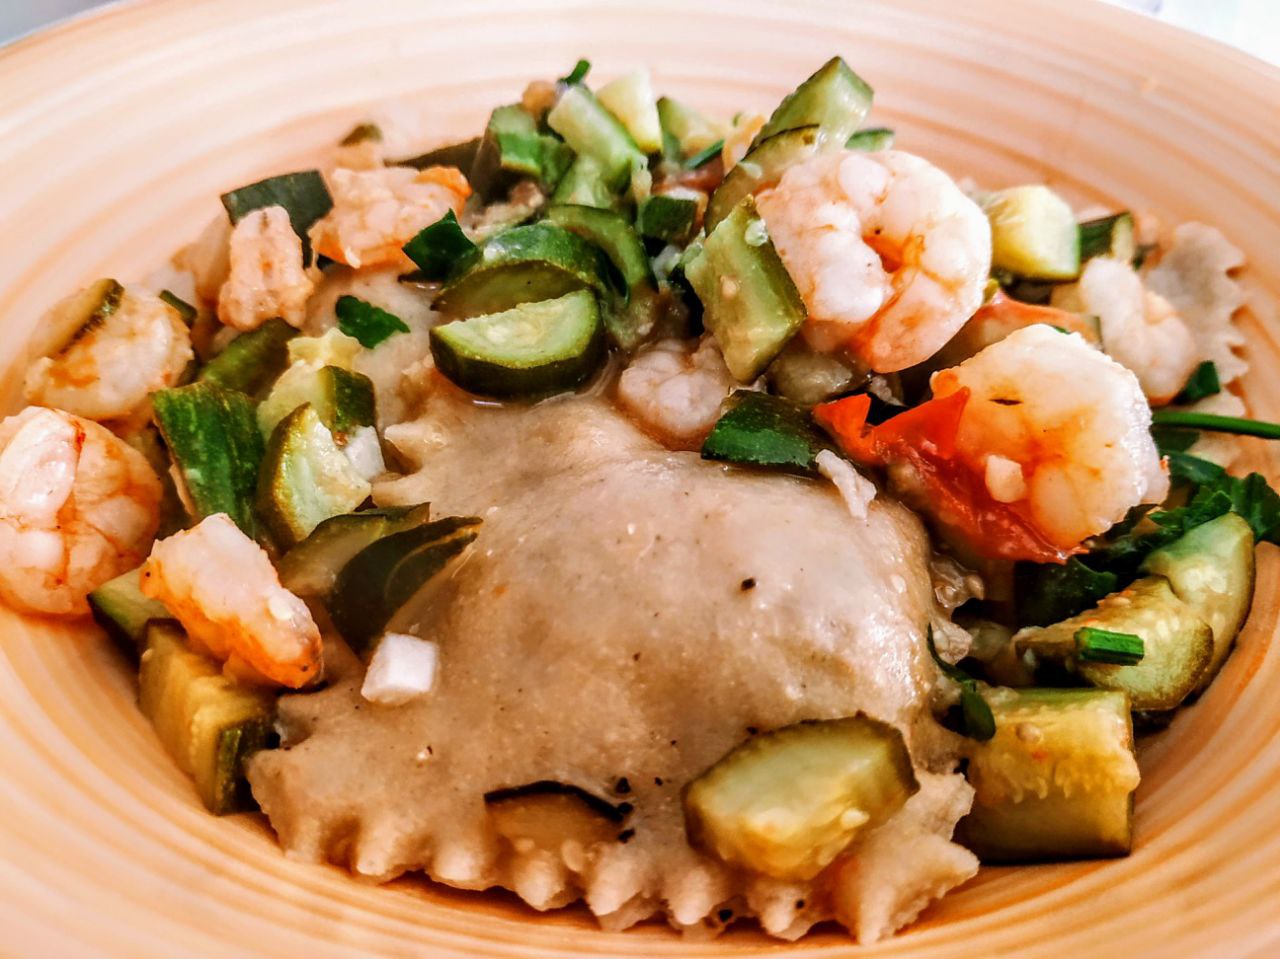 Primi piatti a base di pesce senza burro: ravioli di branzino con zucchine gamberetti e olio evo!